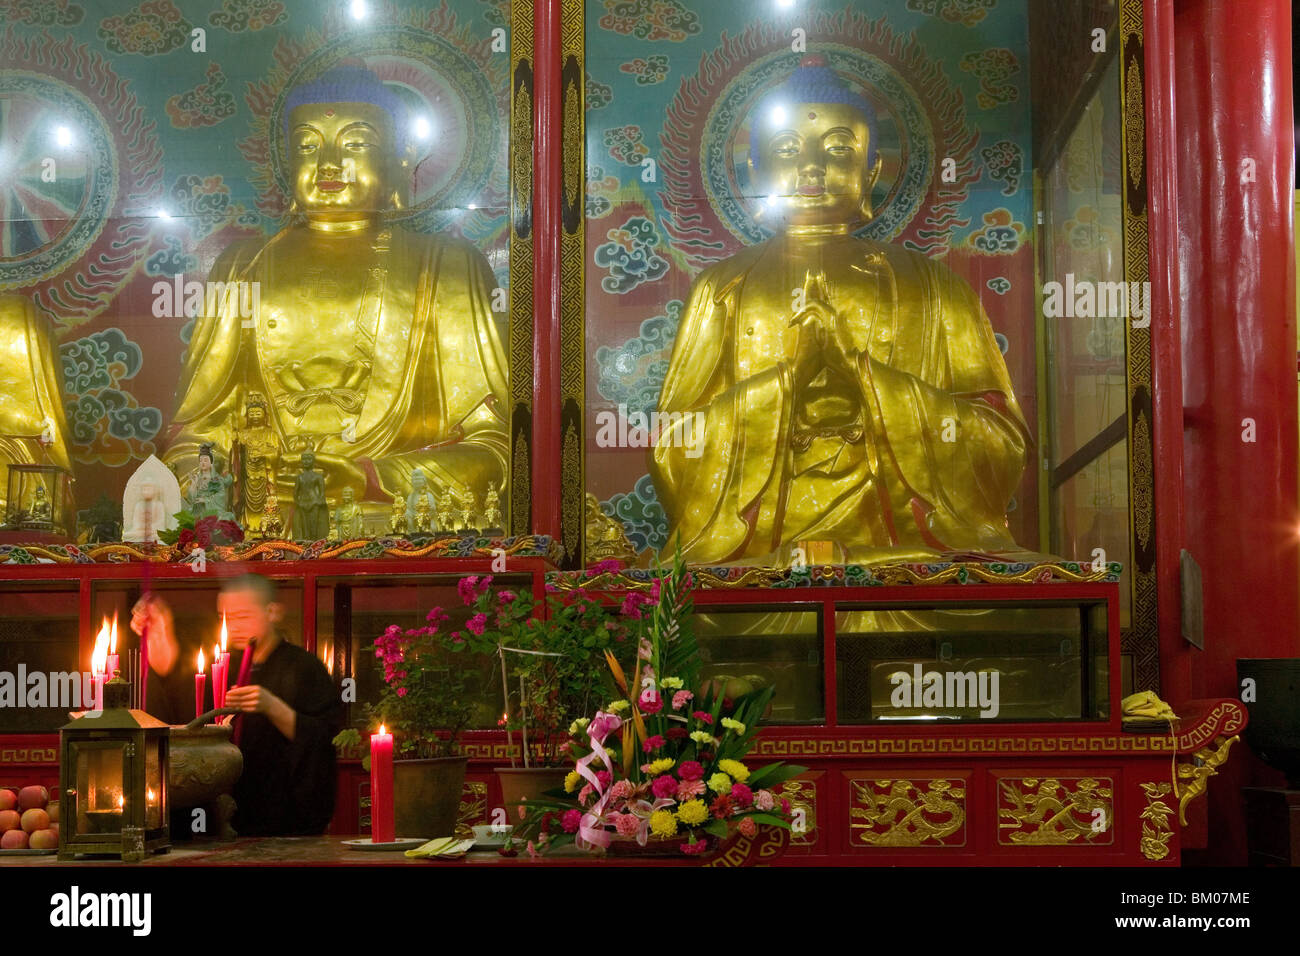 Gebet, Statuen von der Vergangenheit, der Gegenwart und der zukünftige Buddha Wannian Kloster und Tempel, Weltkulturerbe, UNESCO, China Stockfoto